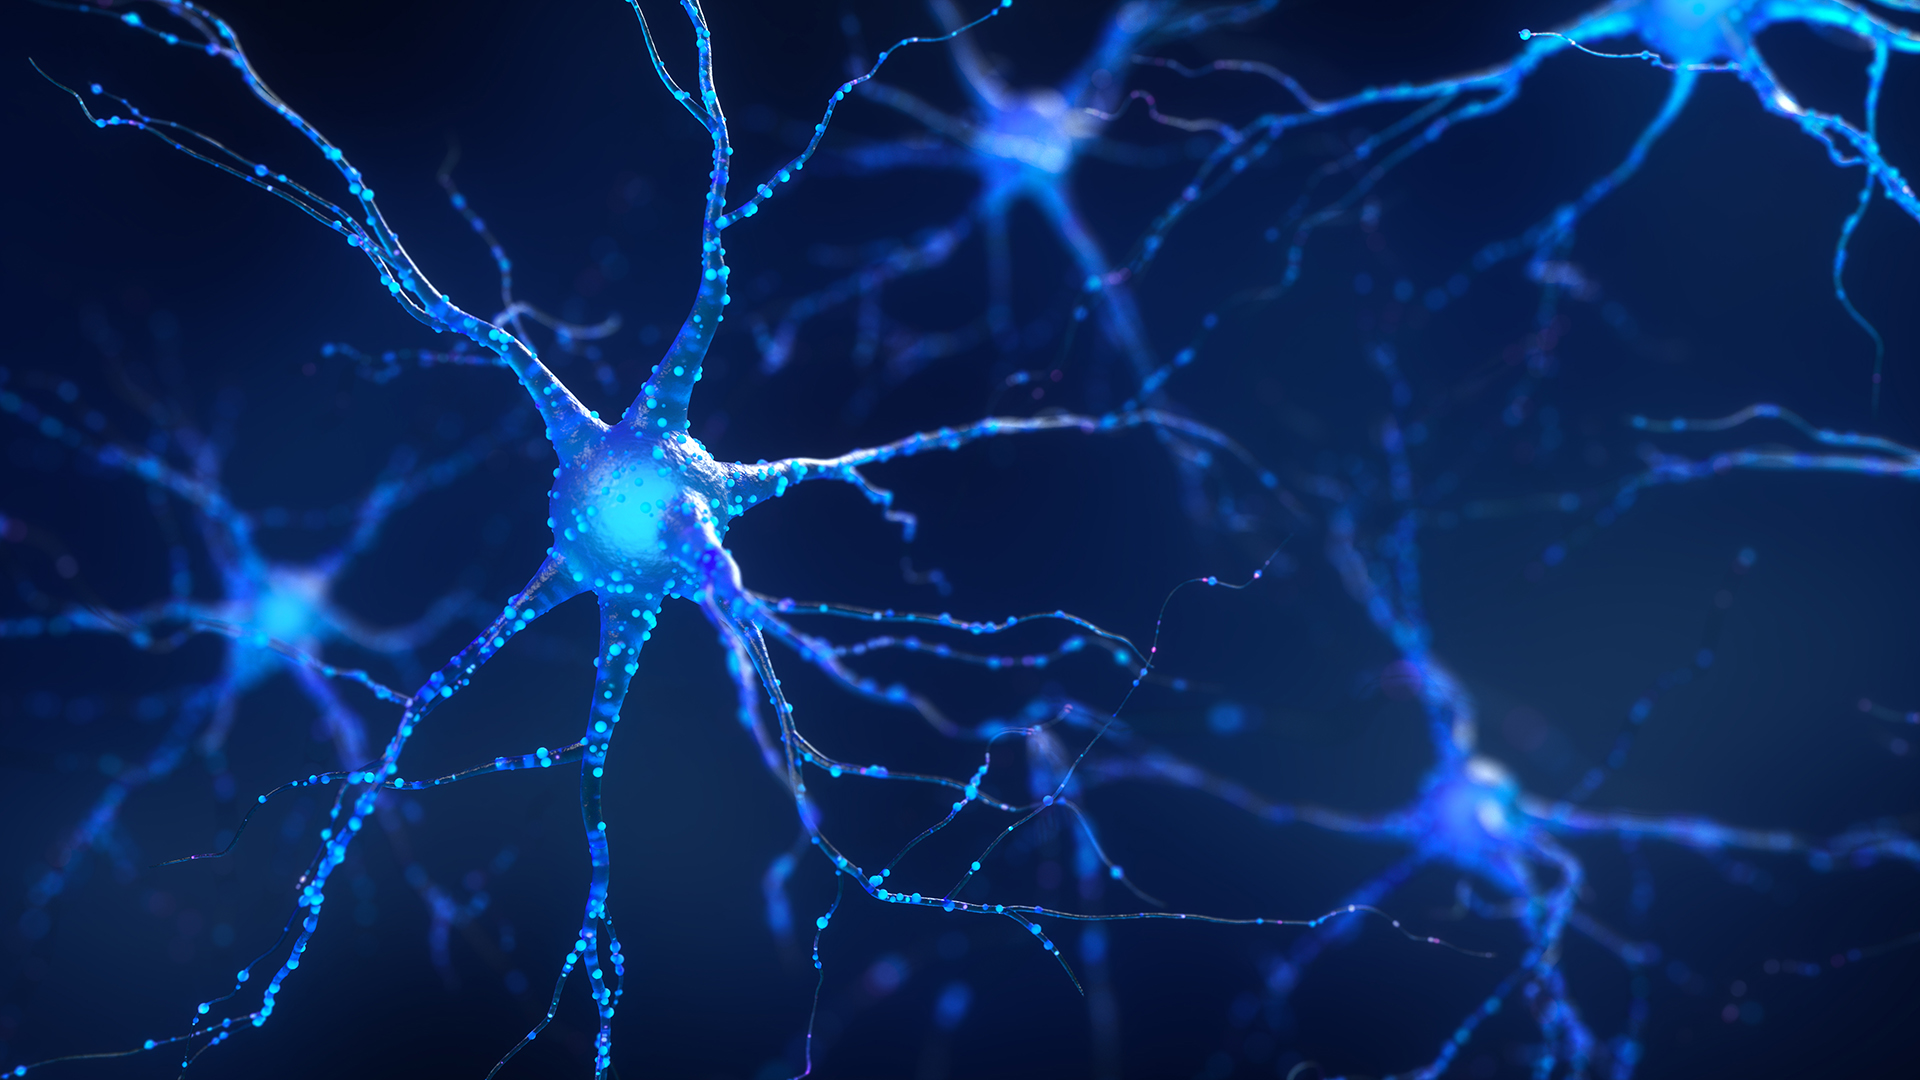 Una sola dosis de alcohol puede alterar la sinapsis de las neuronas (Getty)